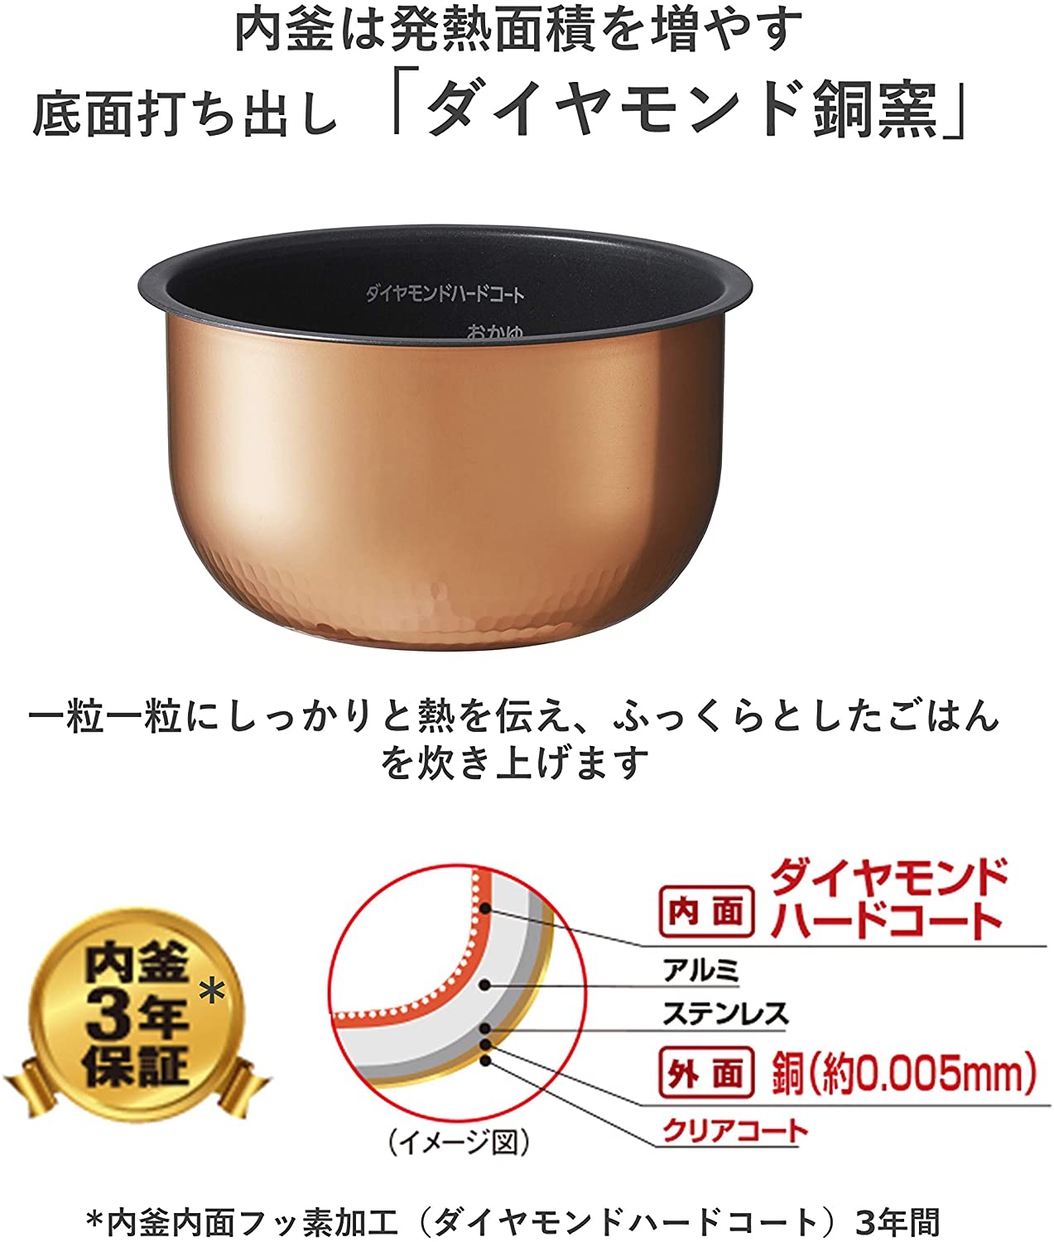 Panasonic(パナソニック) 炊飯器 5.5合 IH式  SR-FD109-Tの商品画像サムネ2 